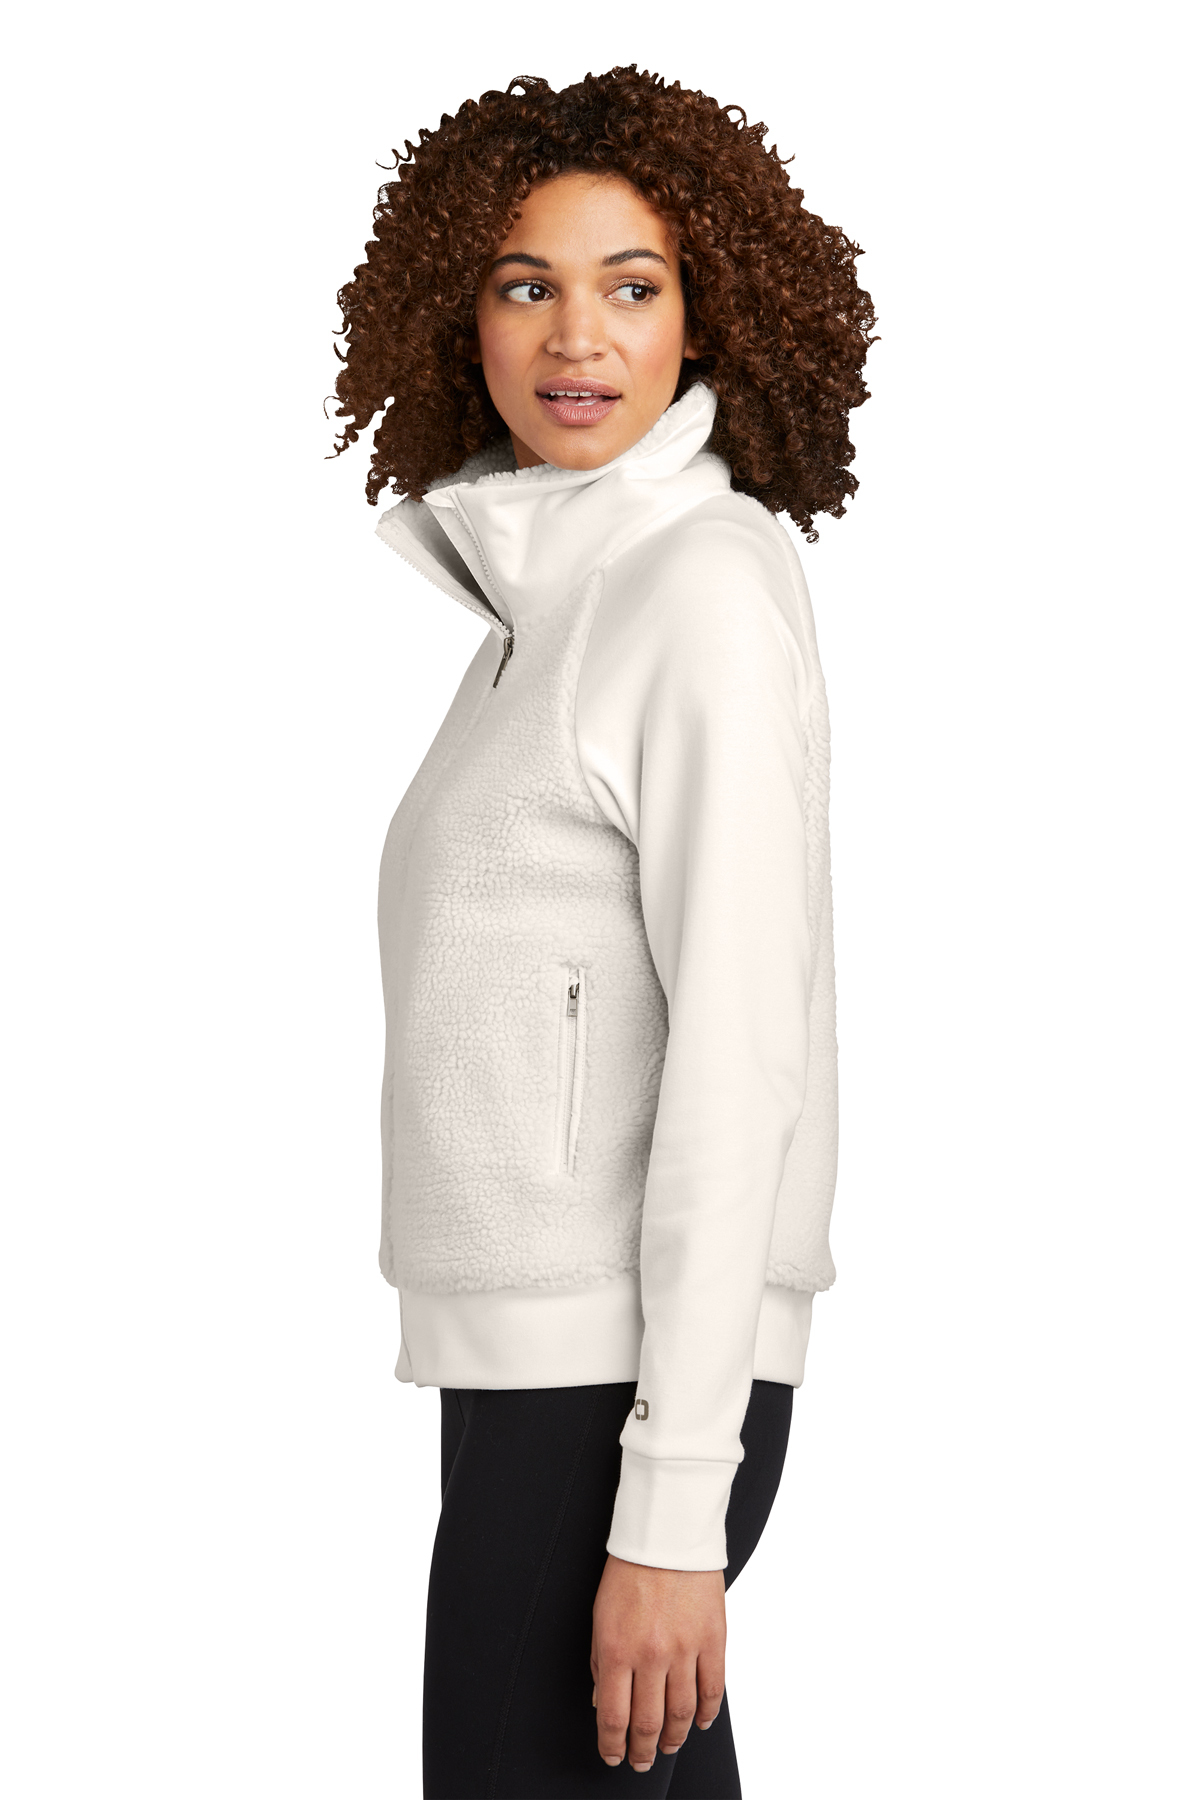 LULULEMON Ivory White Cream Fleece Zip Up Jacket Size 12